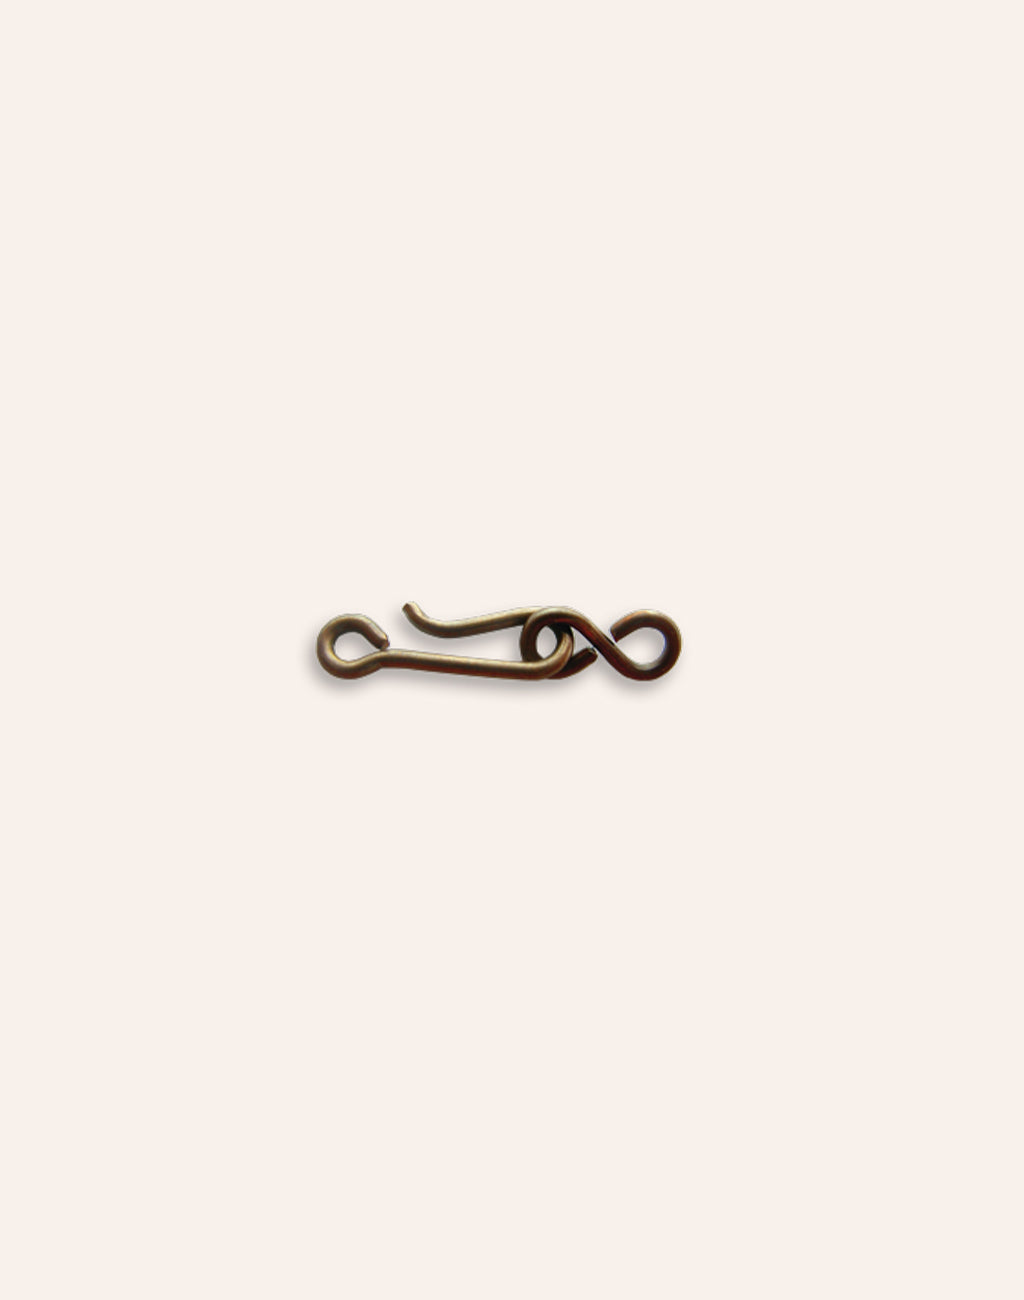 Buy Tiny Hook & Eye Clasp Set, 21x6mm, (1 set) at Vintaj